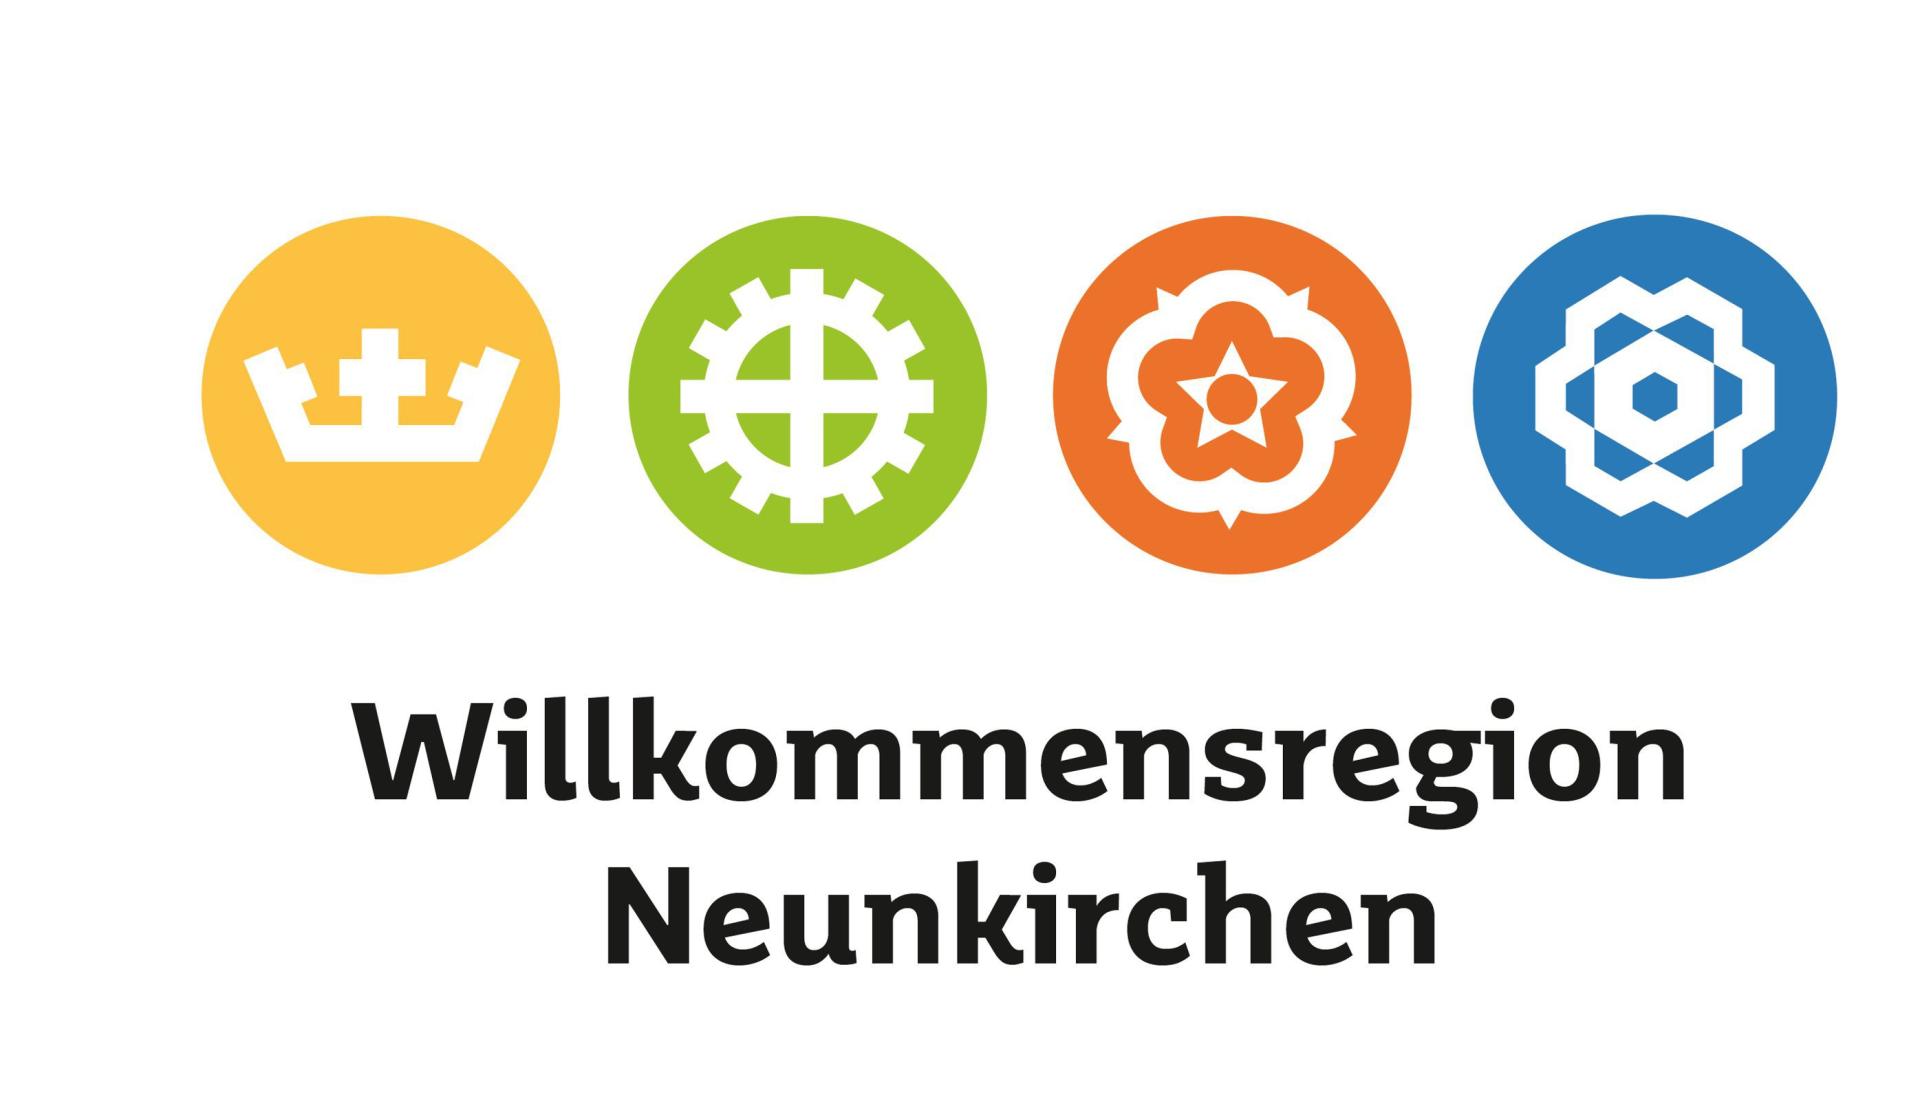 Logo Landkreis Neunkirchen